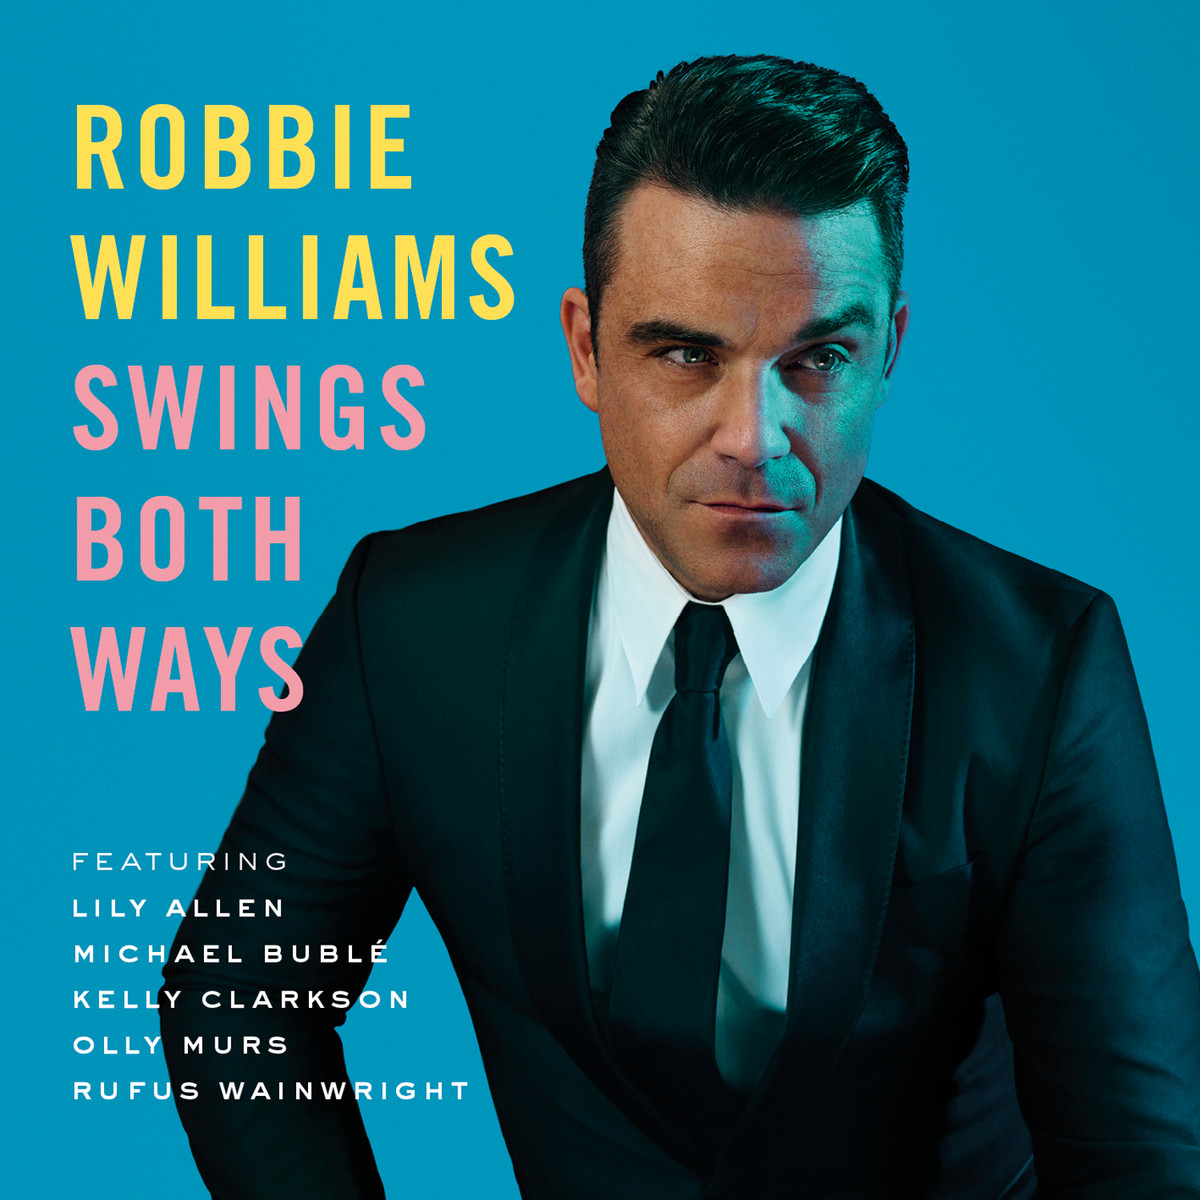 "Swings both ways" De Robbie Williams